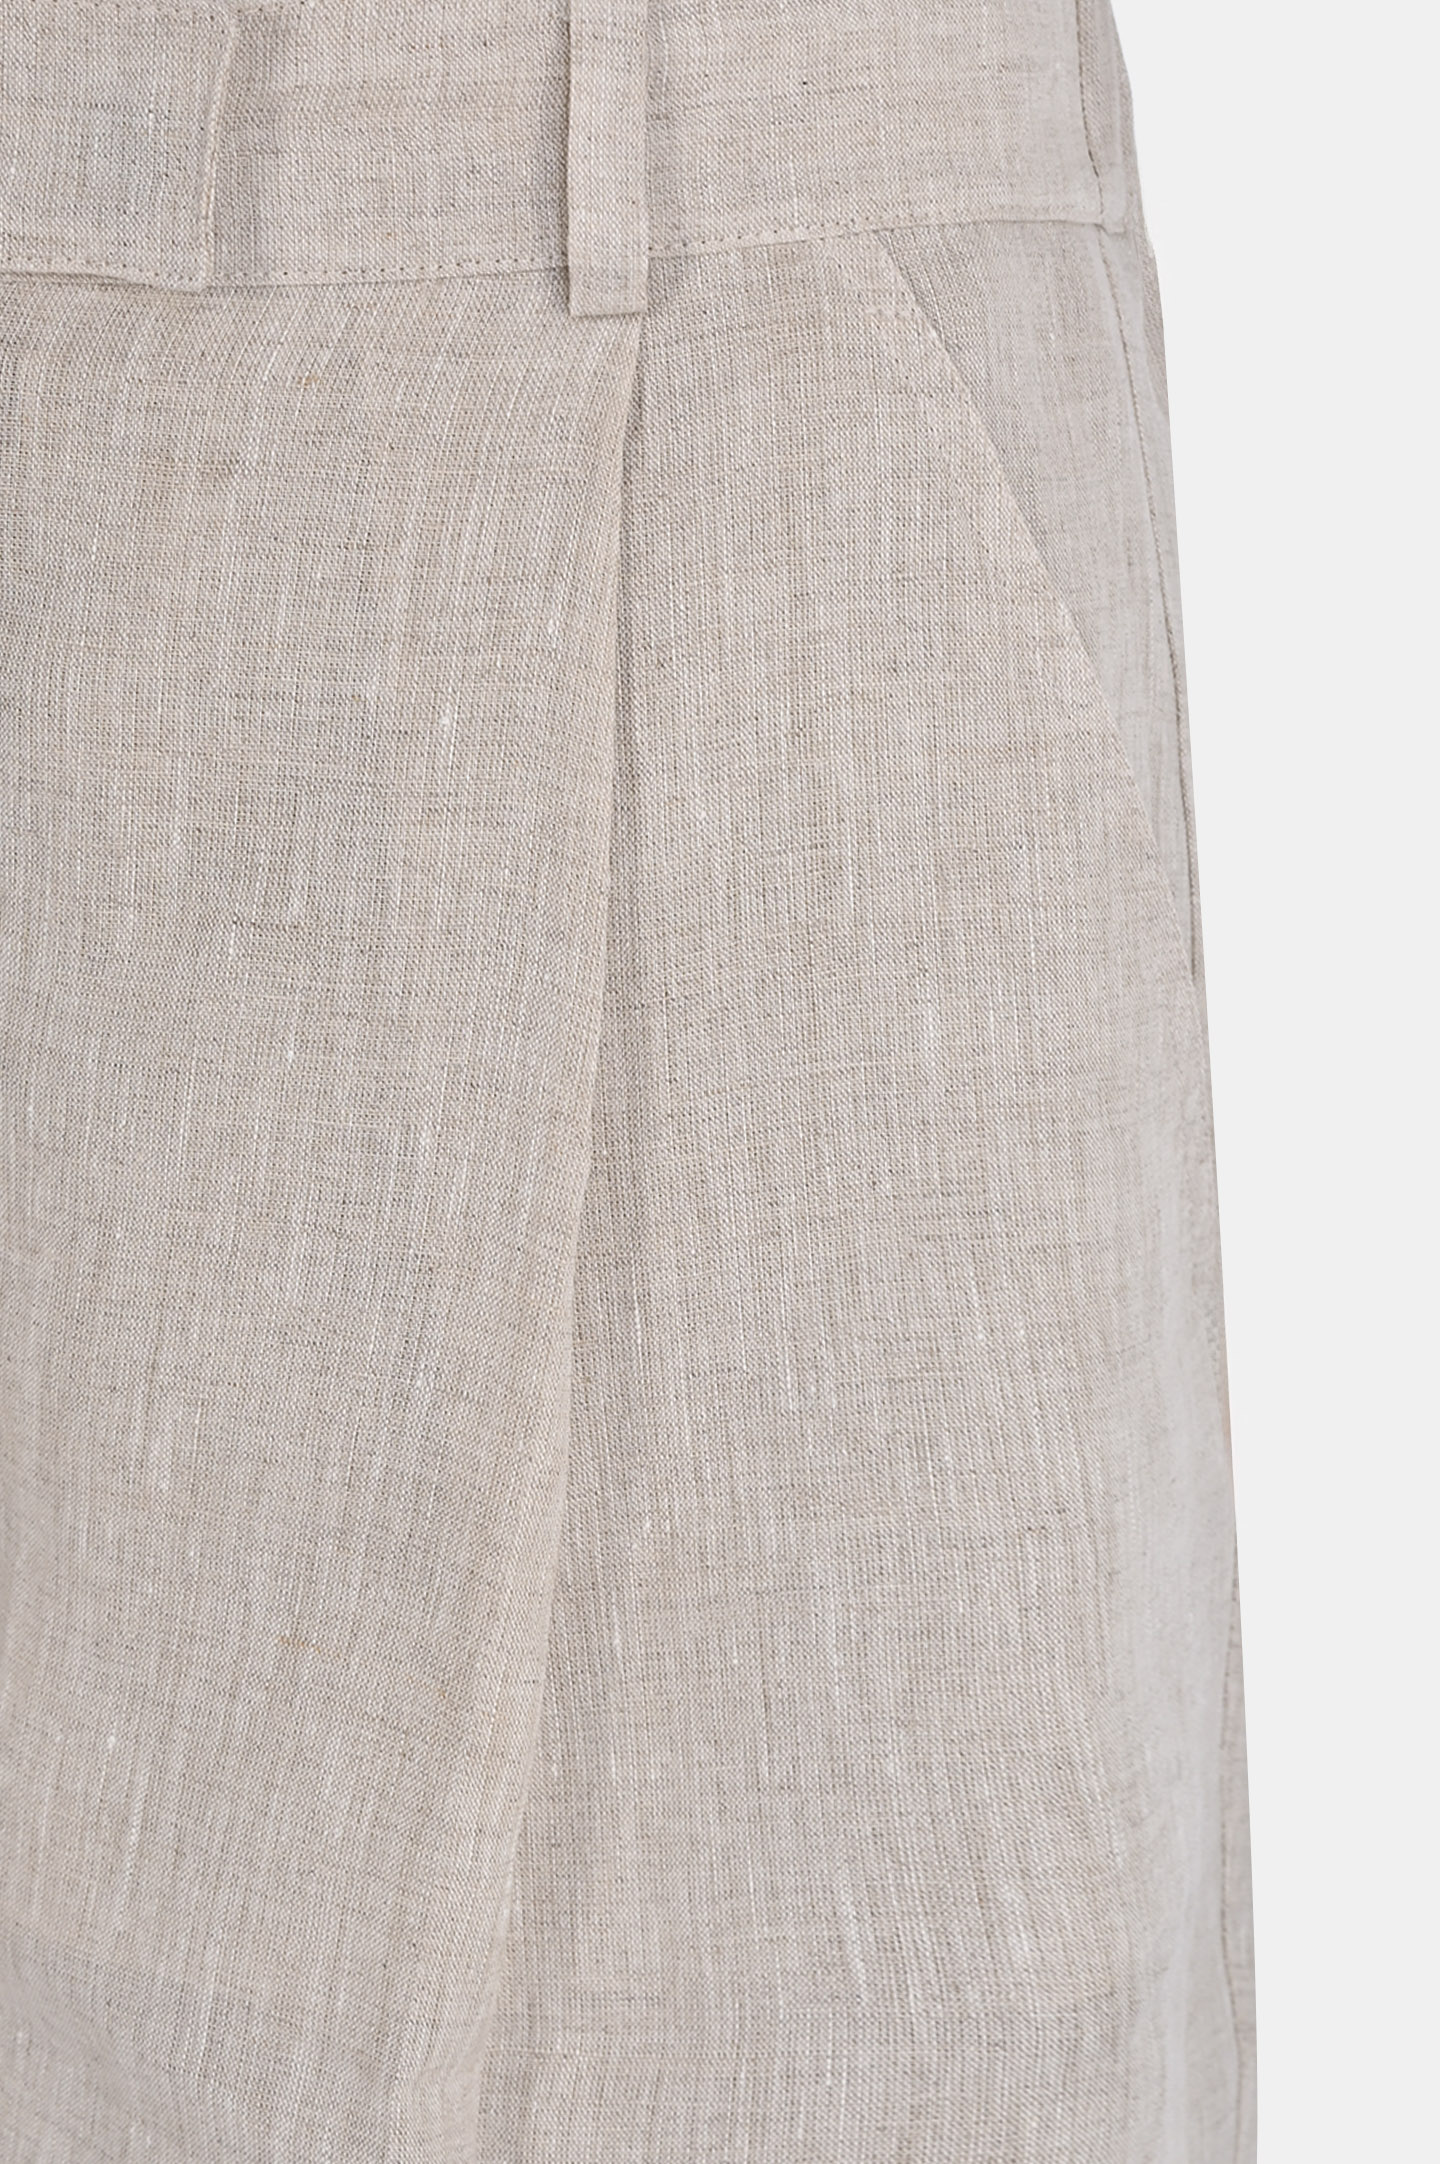 Классические шорты из льна со стрелками BRUNELLO  CUCINELLI MB650EP999, цвет: Светло-бежевый, Женский